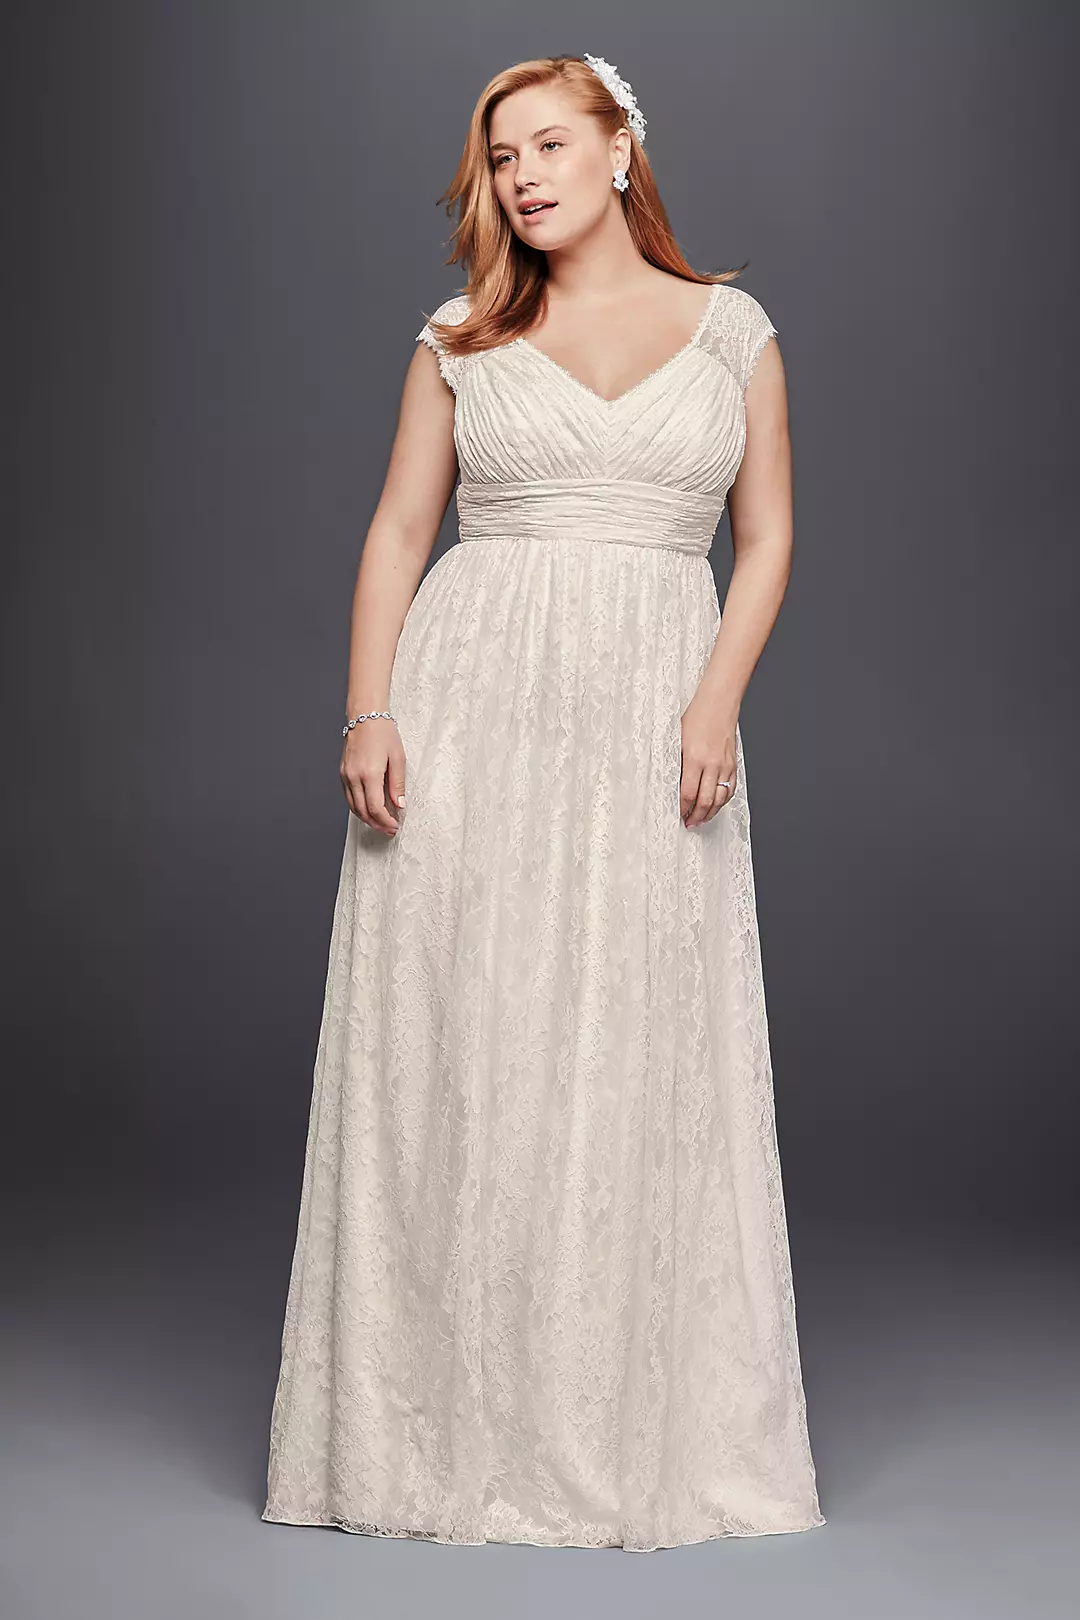 Lace Sheath Wedding Dress with Illusion Cap Sleeve Image